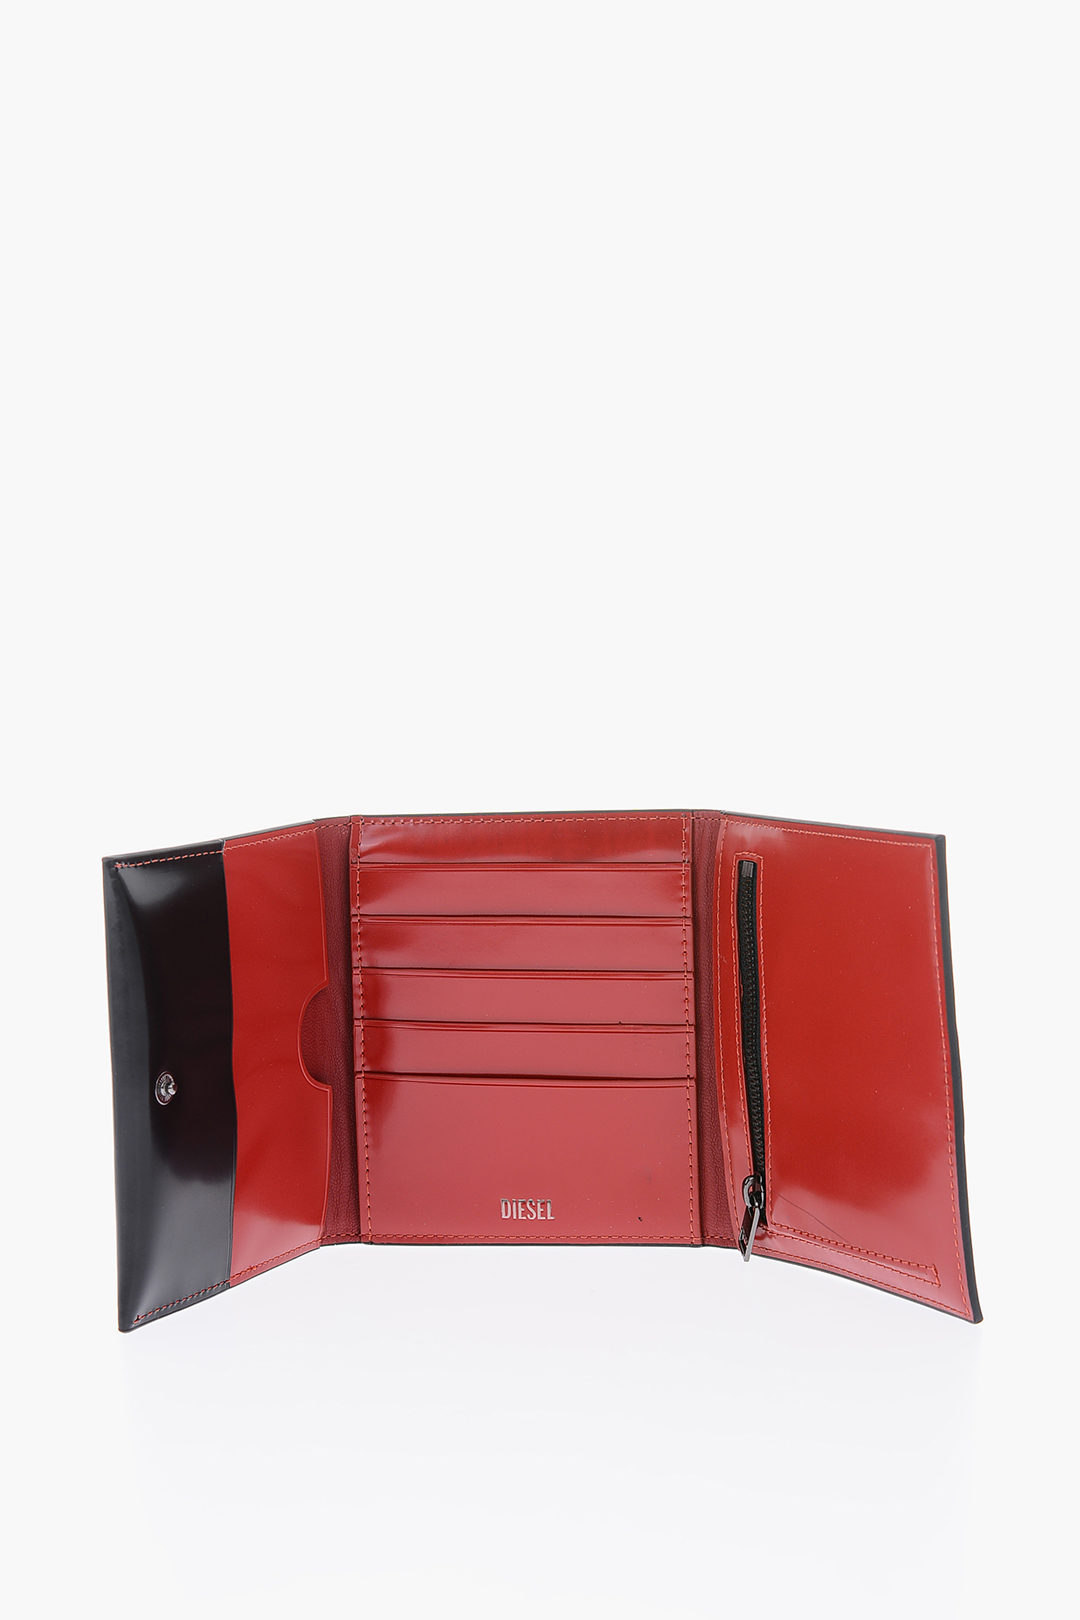 Diesel leather LORETTINA II wallet women - Glamood Outlet